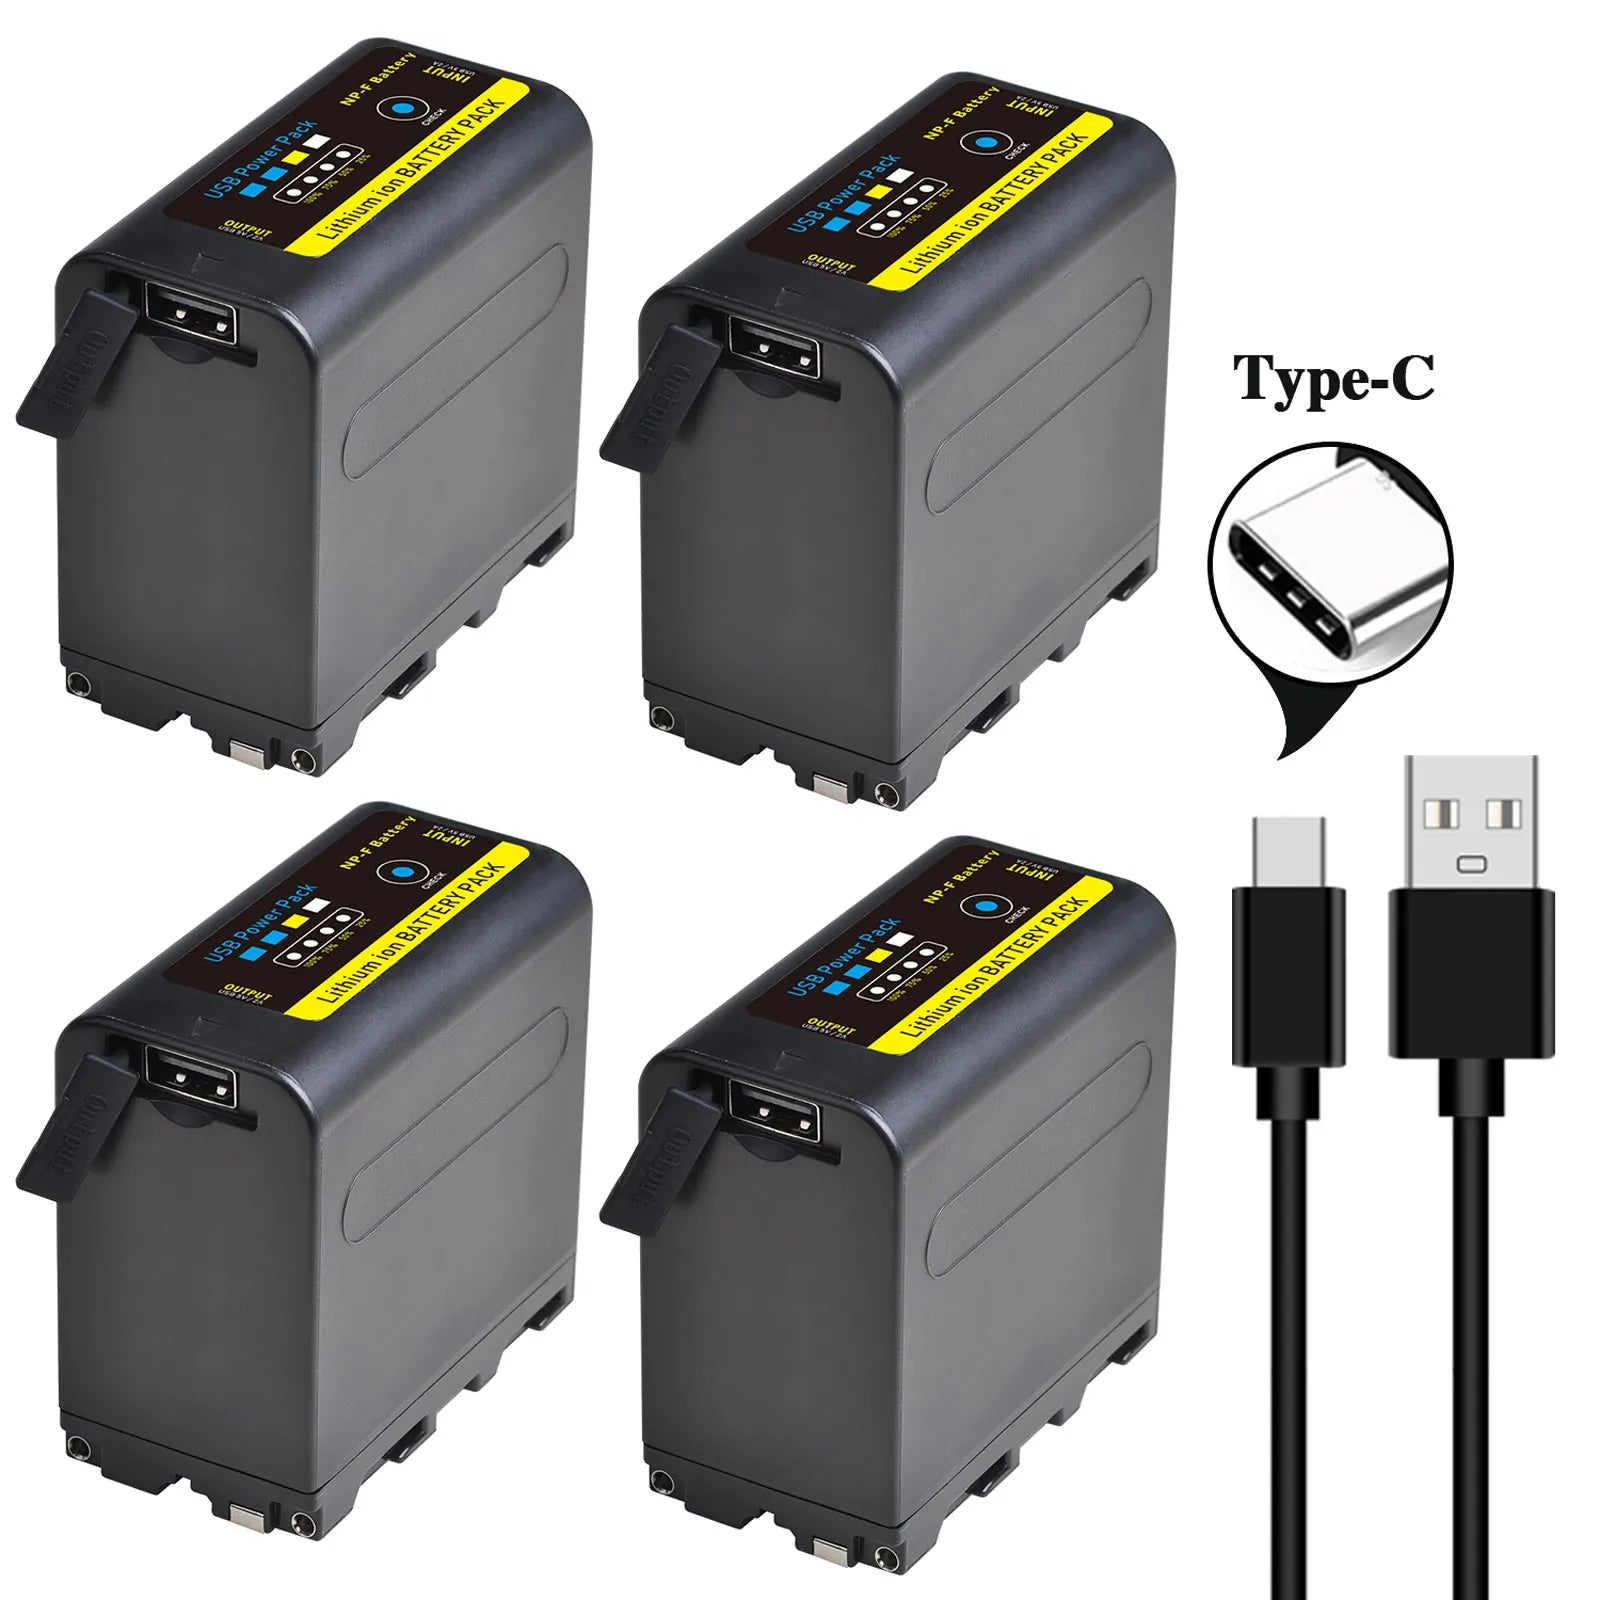 Batterie NP-F980 NP-F970 NP-F960 9600mAh avec recharge USB type C pour Sony PLM-100 CCD-TRV35 MVC-FD91 MC1500C...